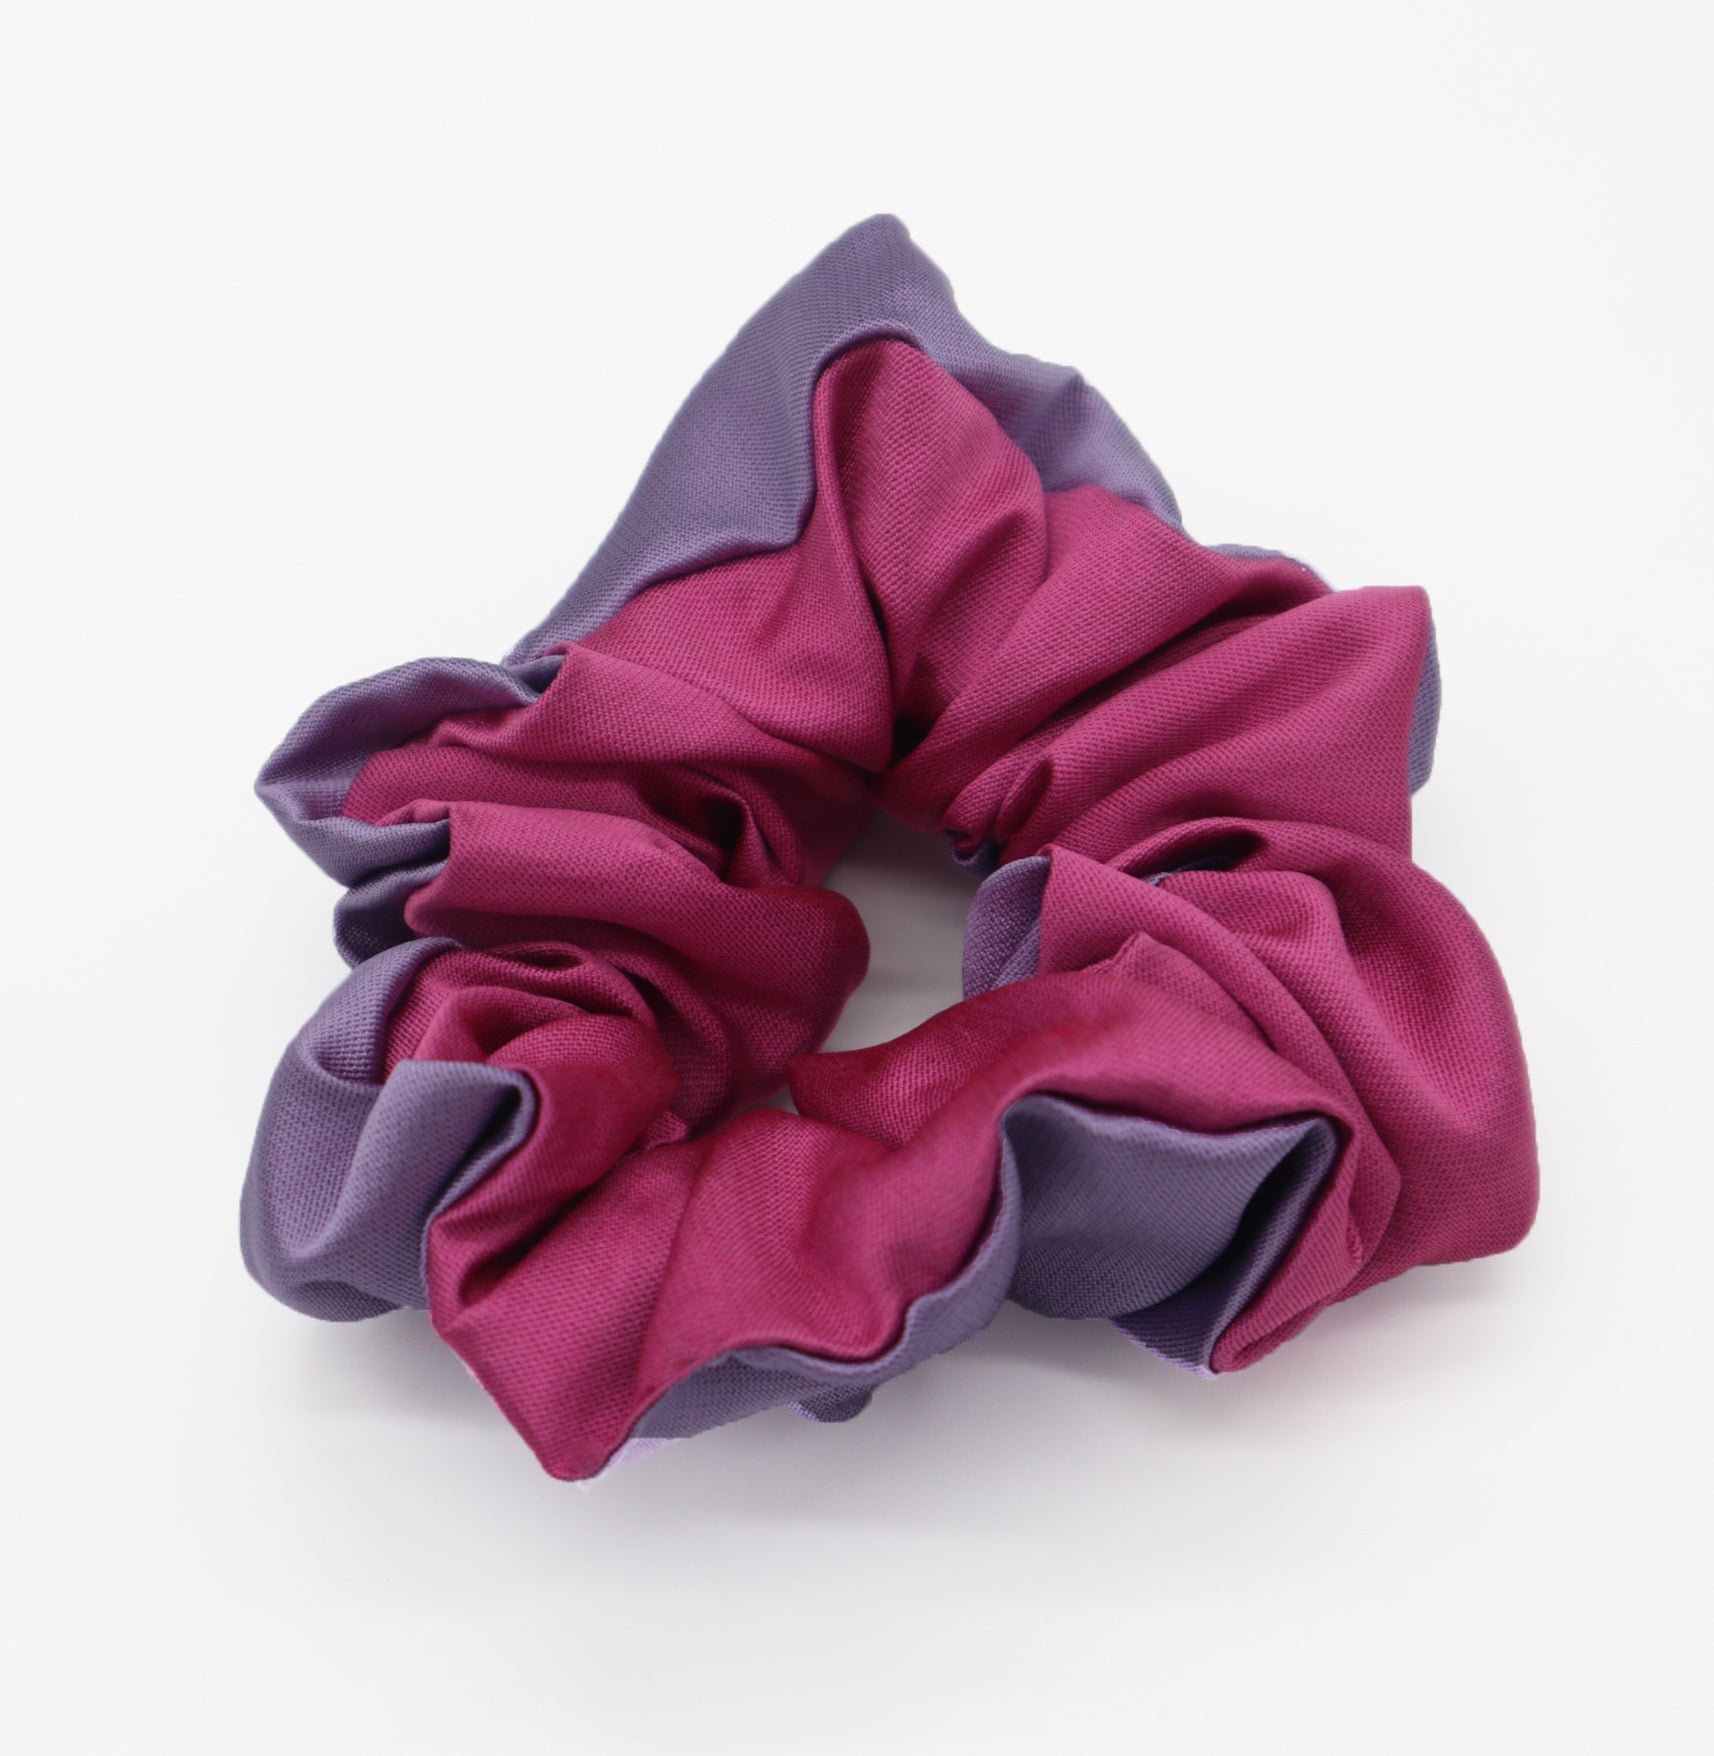 The Fun Dip pink/purple scrunchie